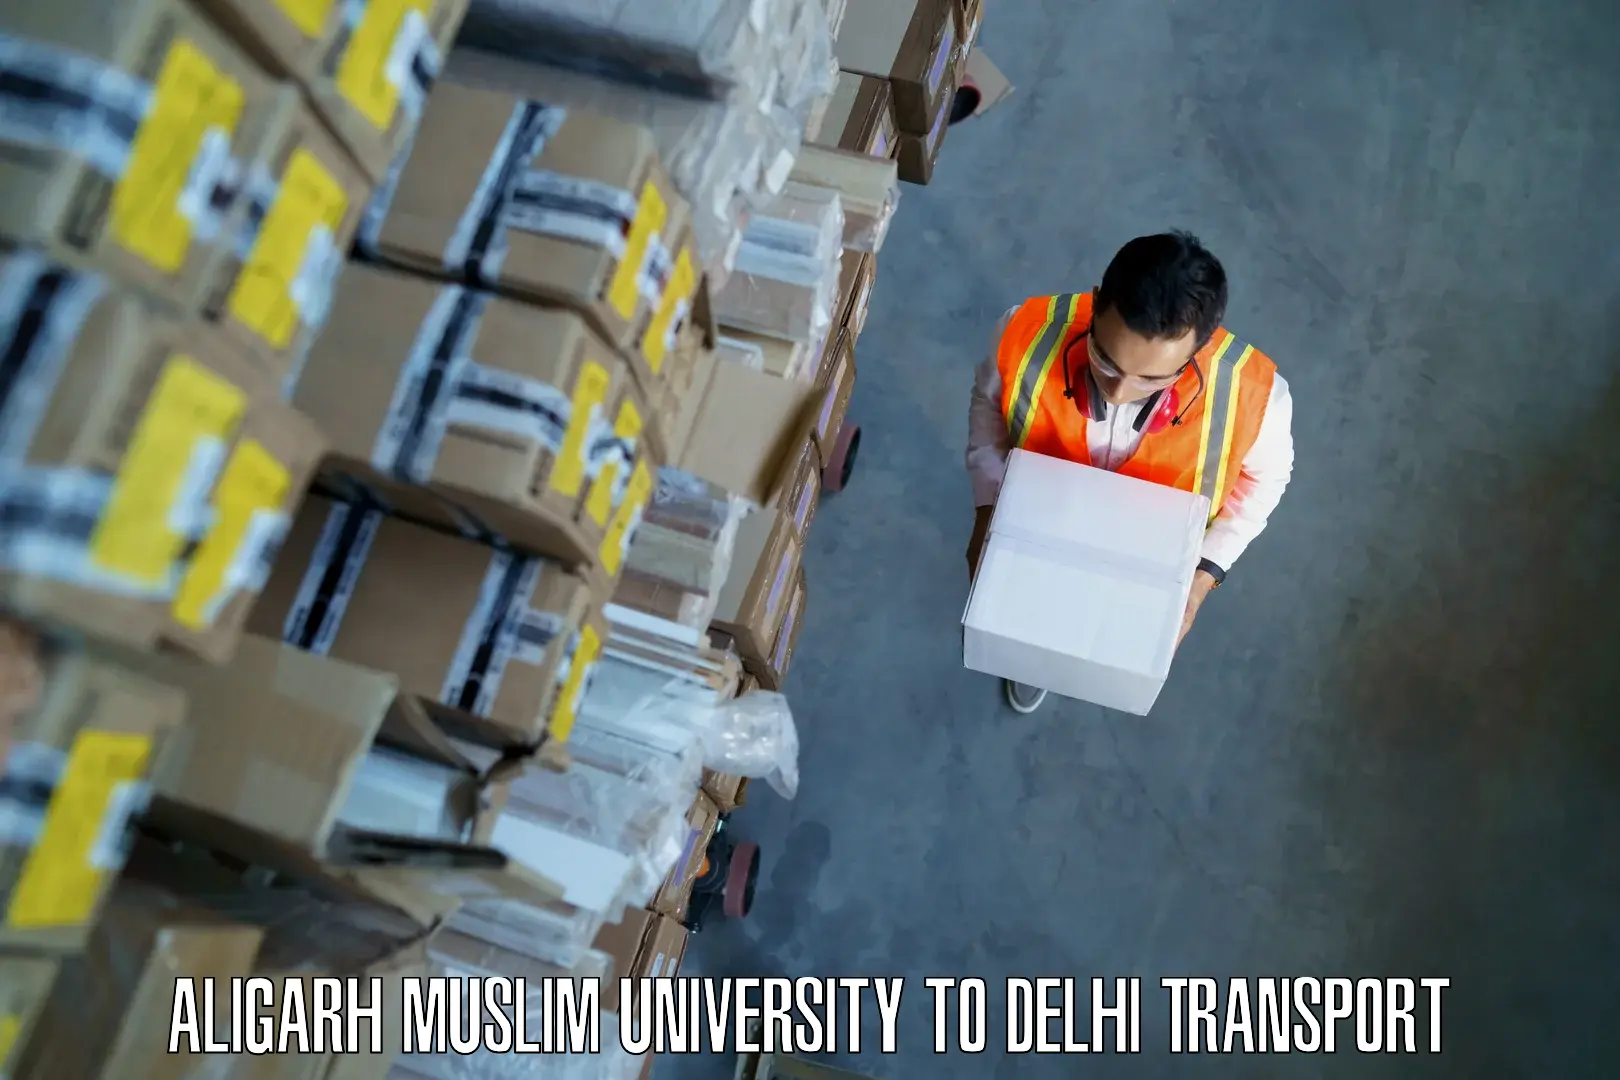 International cargo transportation services Aligarh Muslim University to Delhi